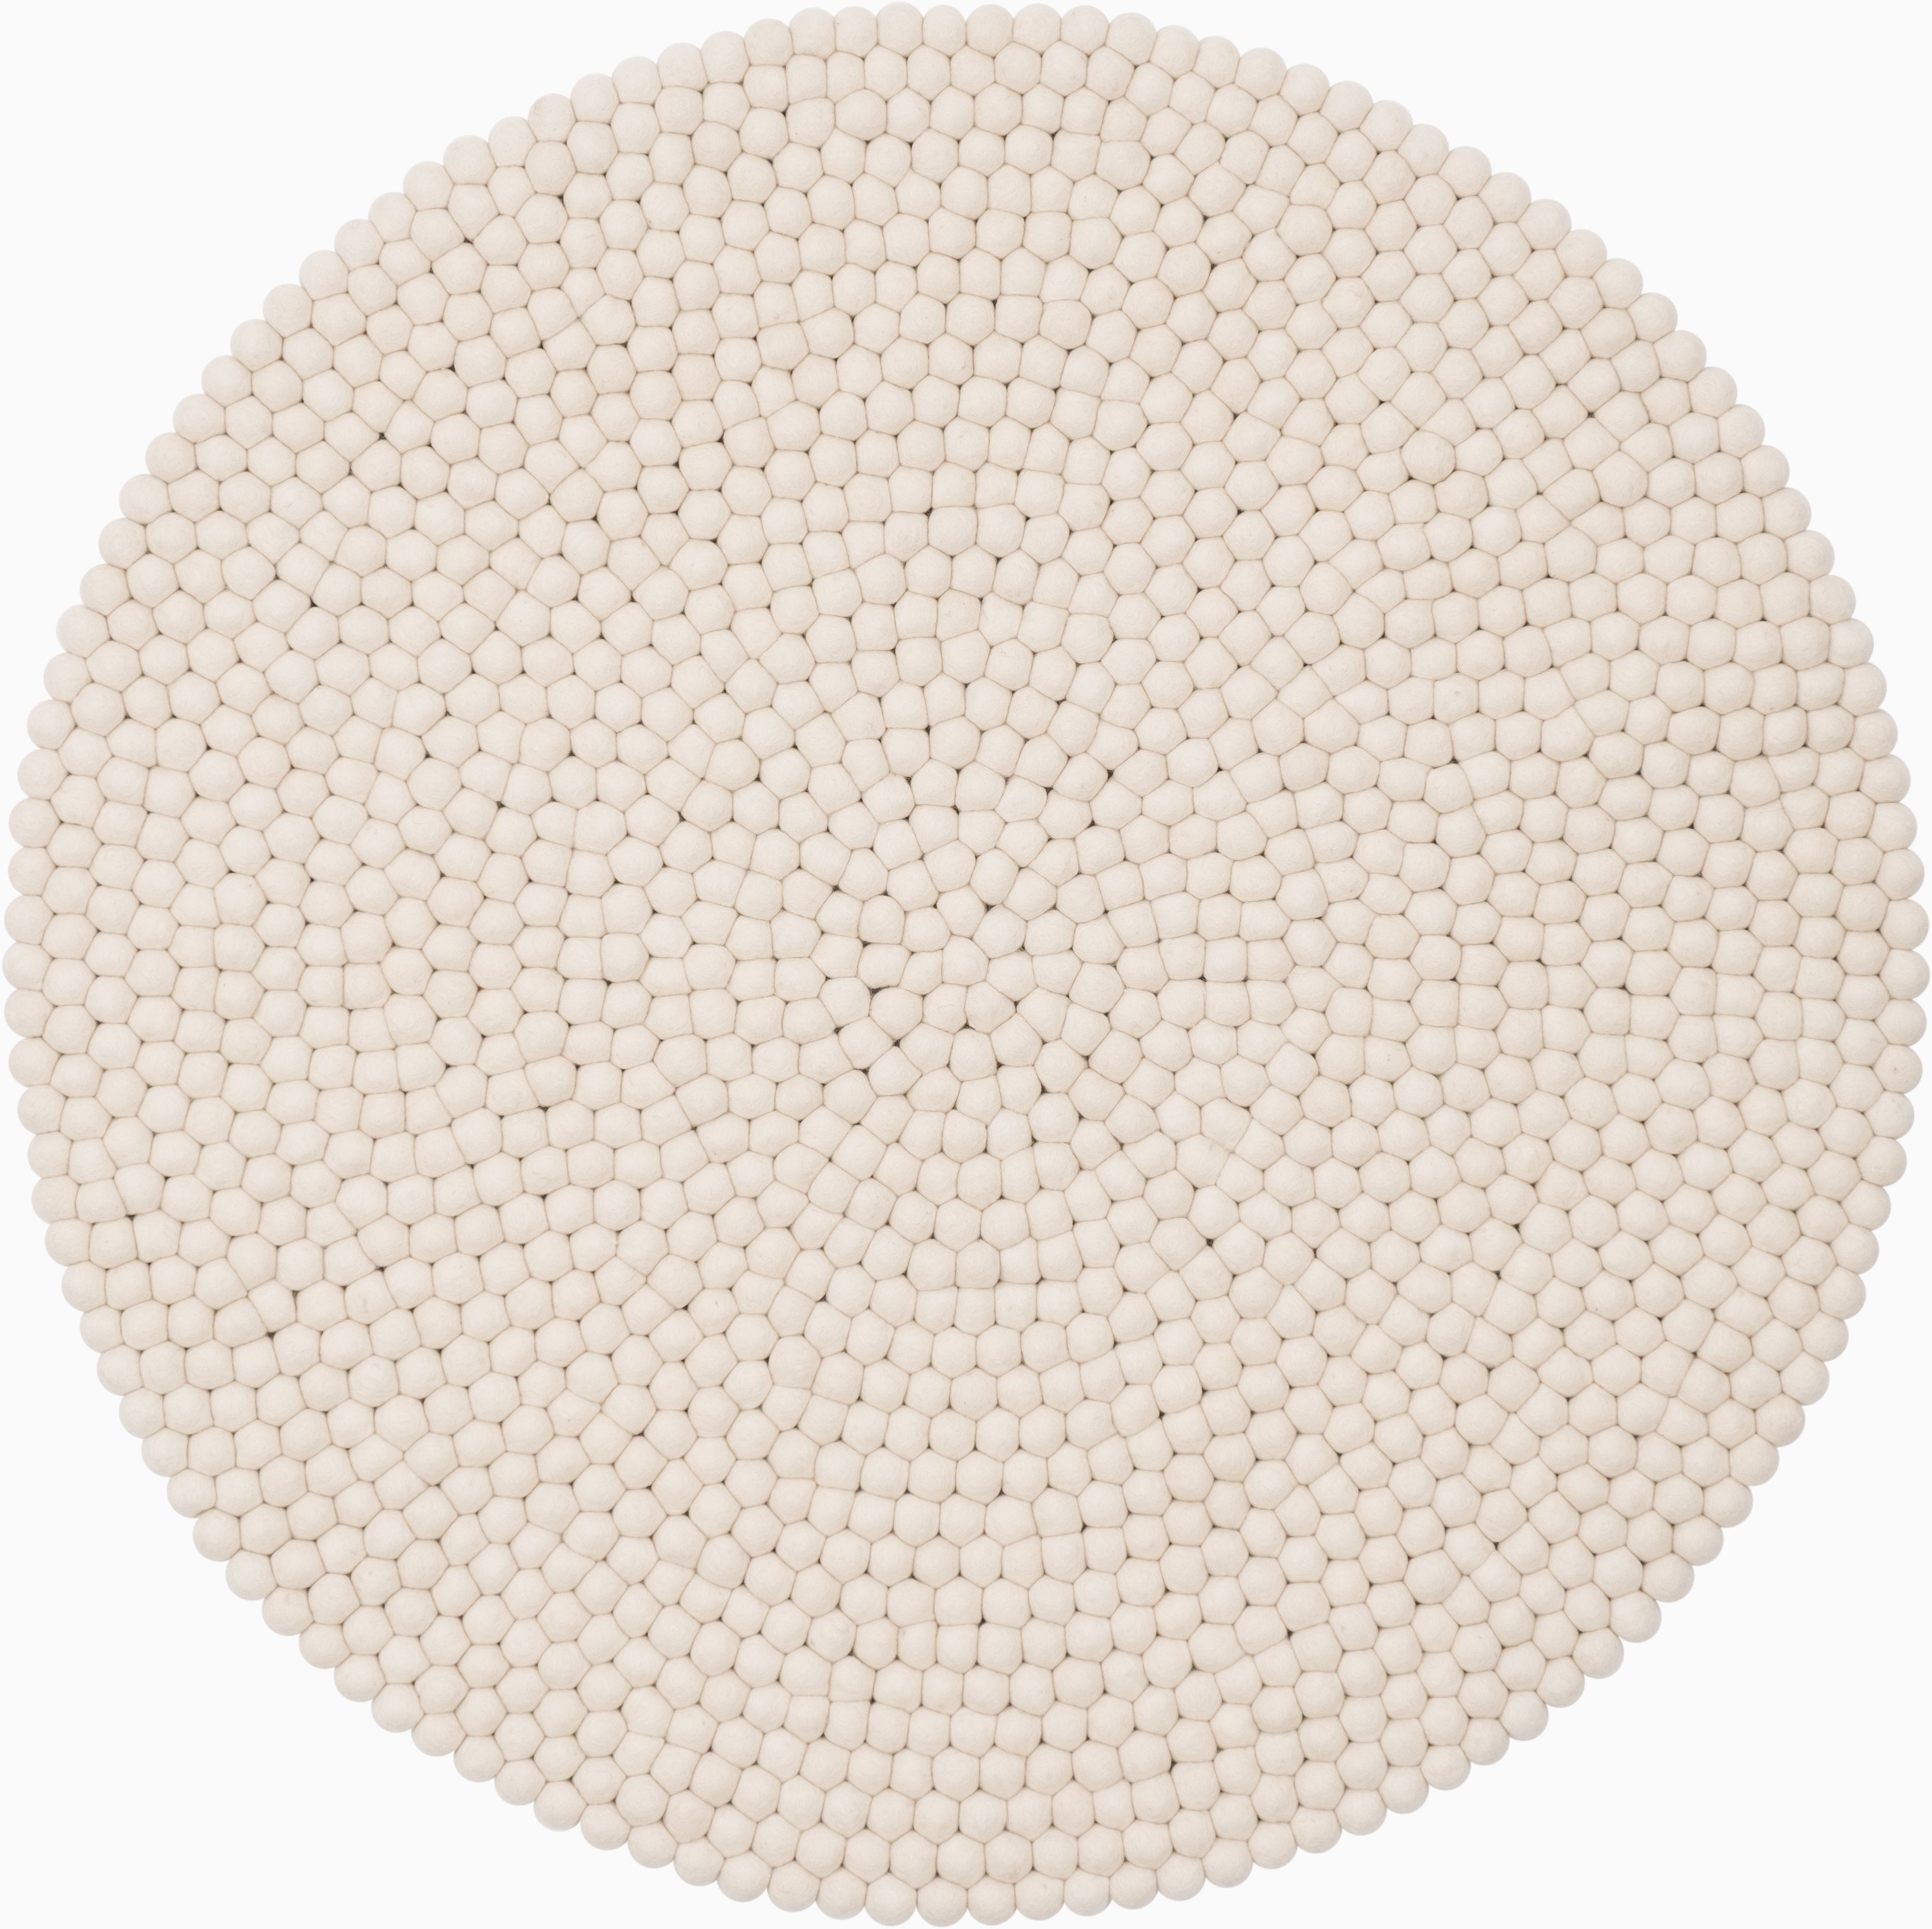 Filz: aus 100 % Schurwolle – Material mit Vorteilen!